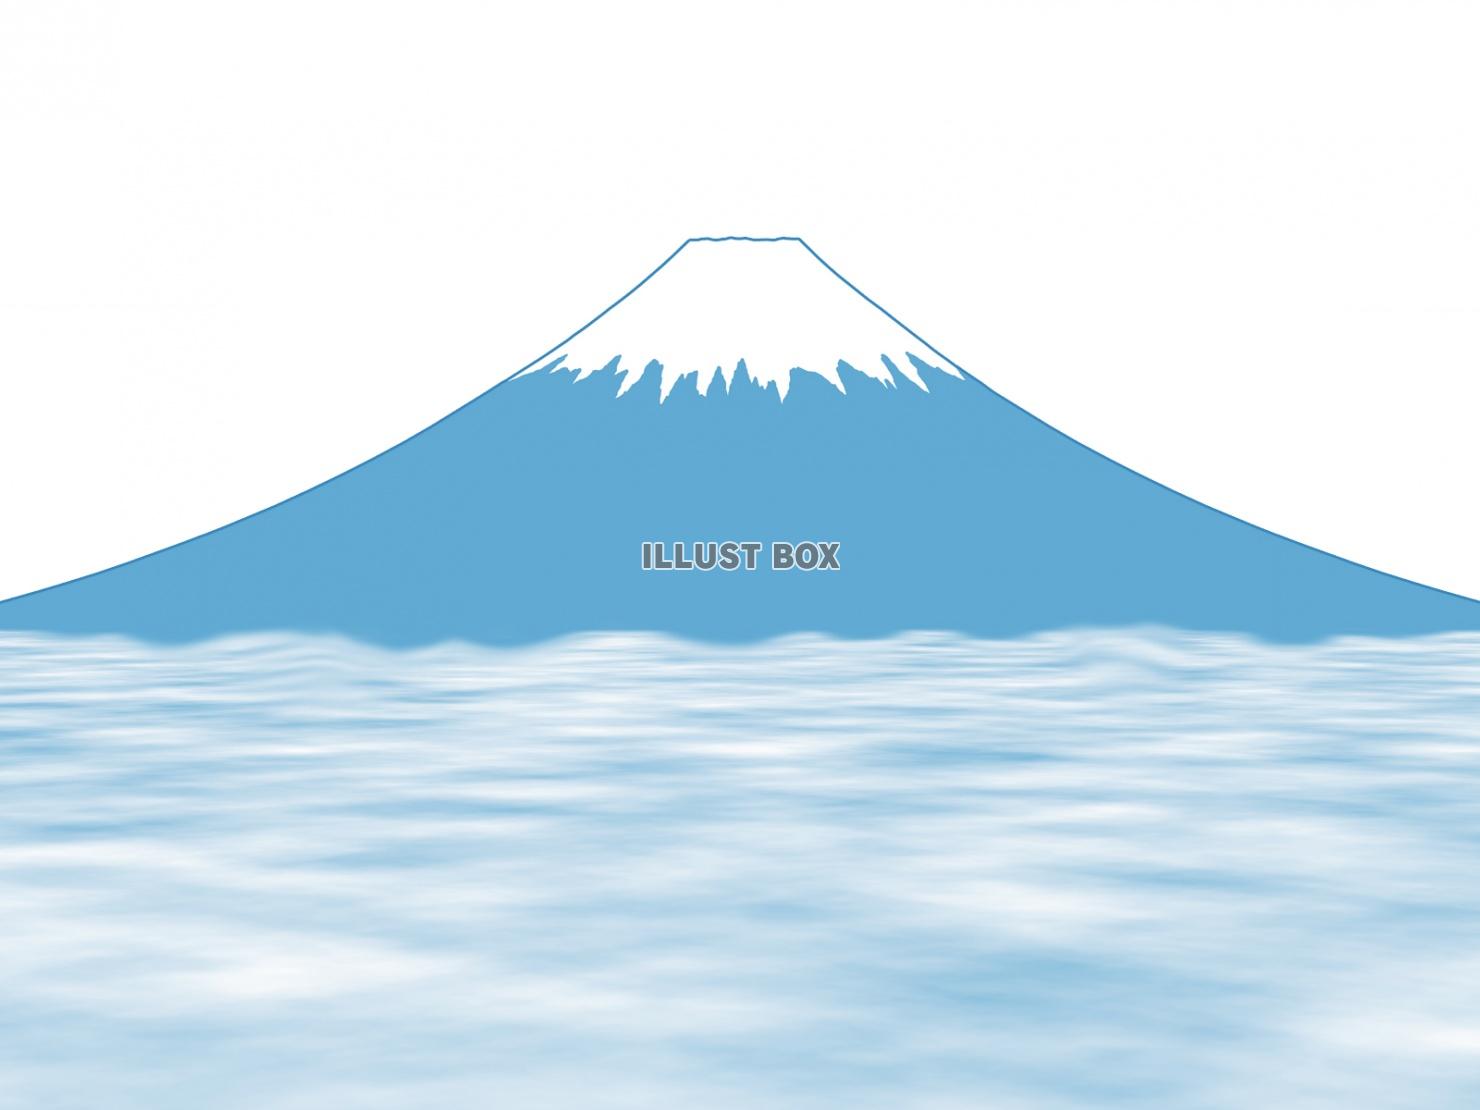 富士山イラスト背景素材シンプル壁紙画像